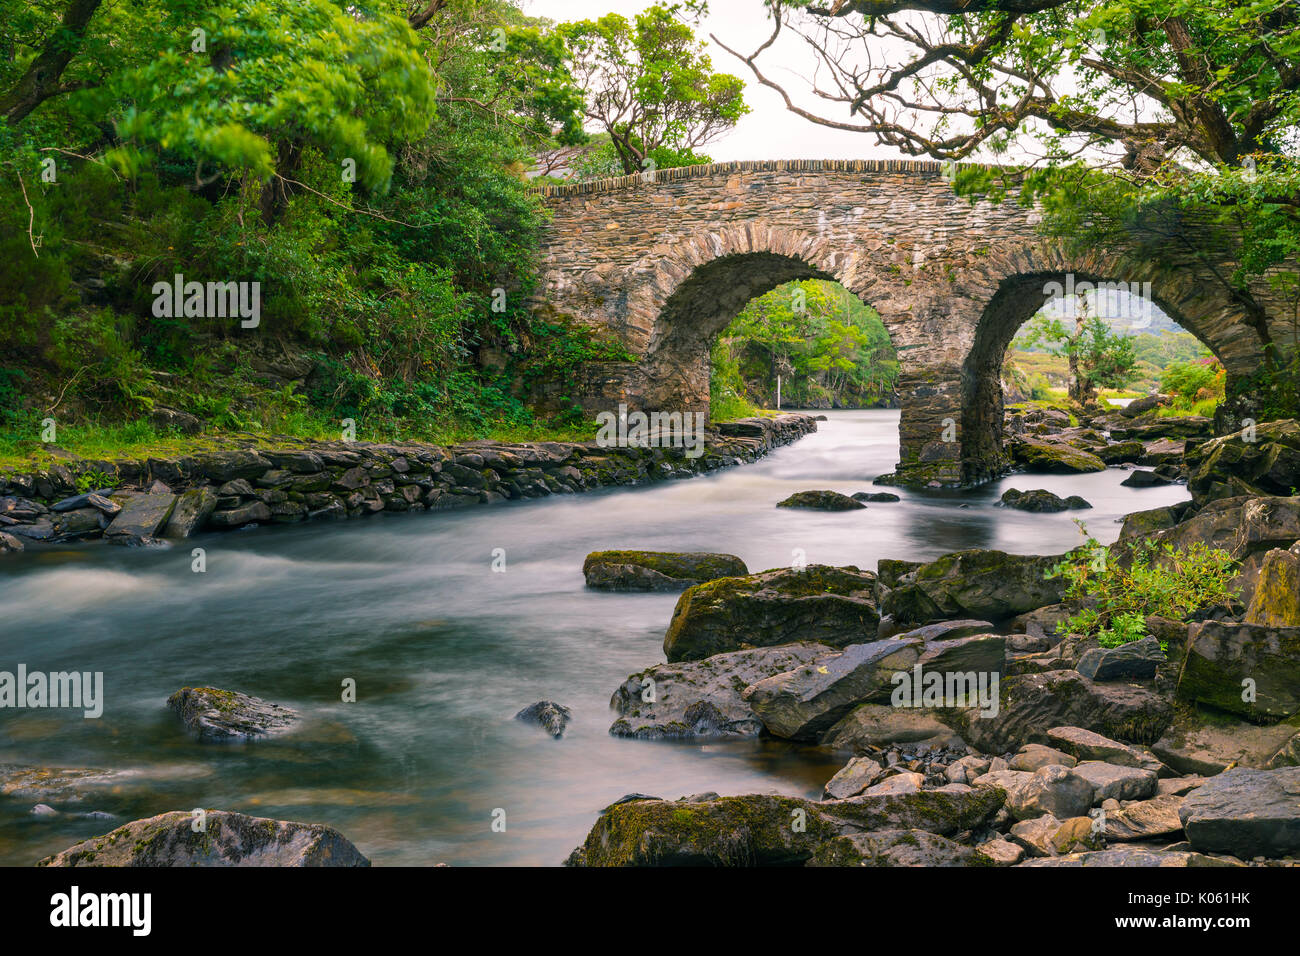 Die alte Weir Bridge ist eine alte Brücke im Nationalpark Killarney im County Kerry, Irland entfernt. Es ist eine Bogenbrücke aus Stein. Die Brid Stockfoto